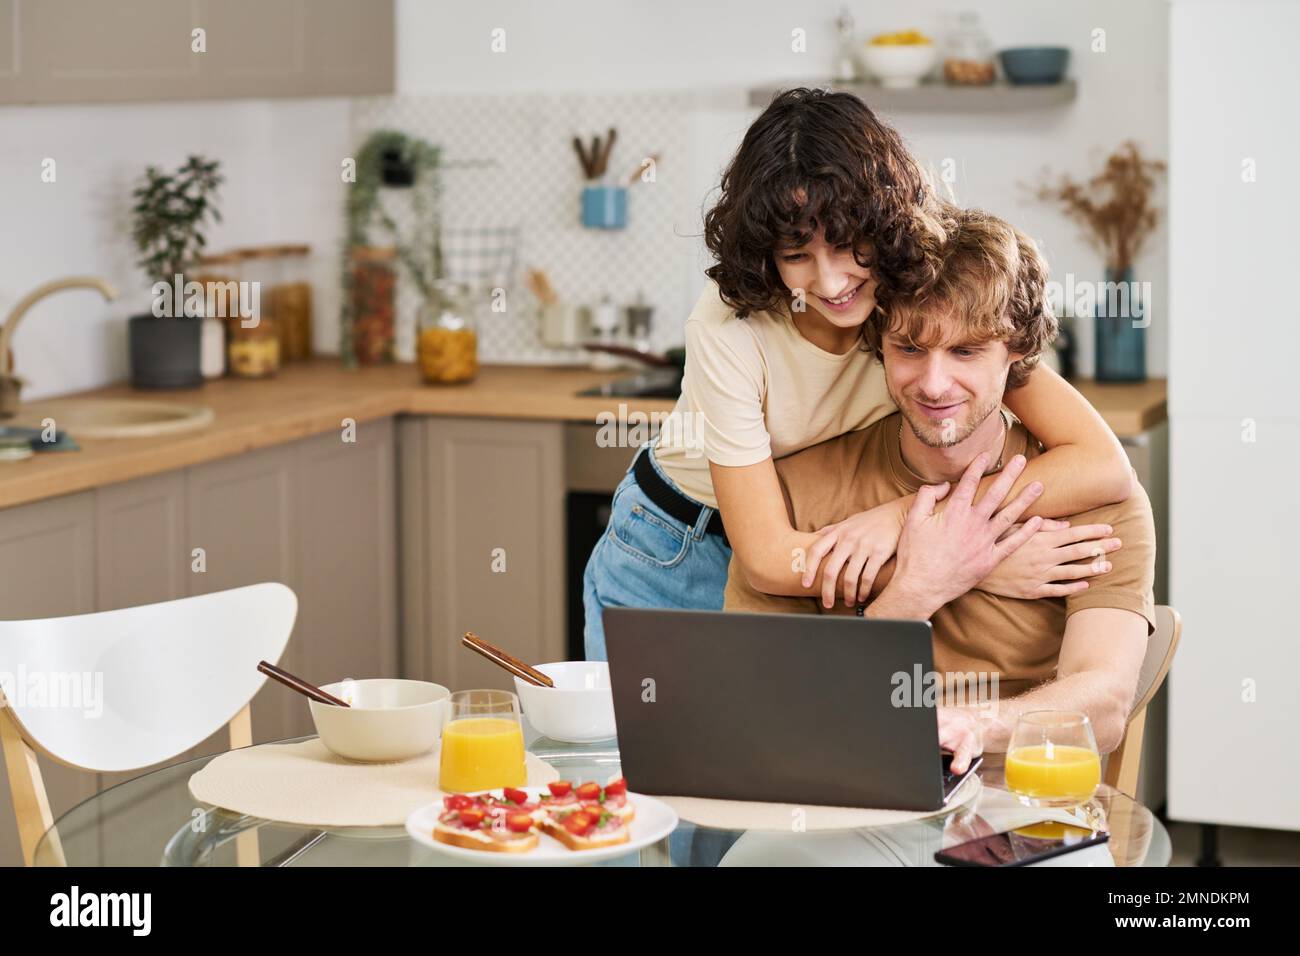 Glückliche junge Frau, die ihren Mann umarmt, während beide während der Kommunikation in einem Video-Chat nach dem Frühstück auf den Laptop-Bildschirm schauten Stockfoto